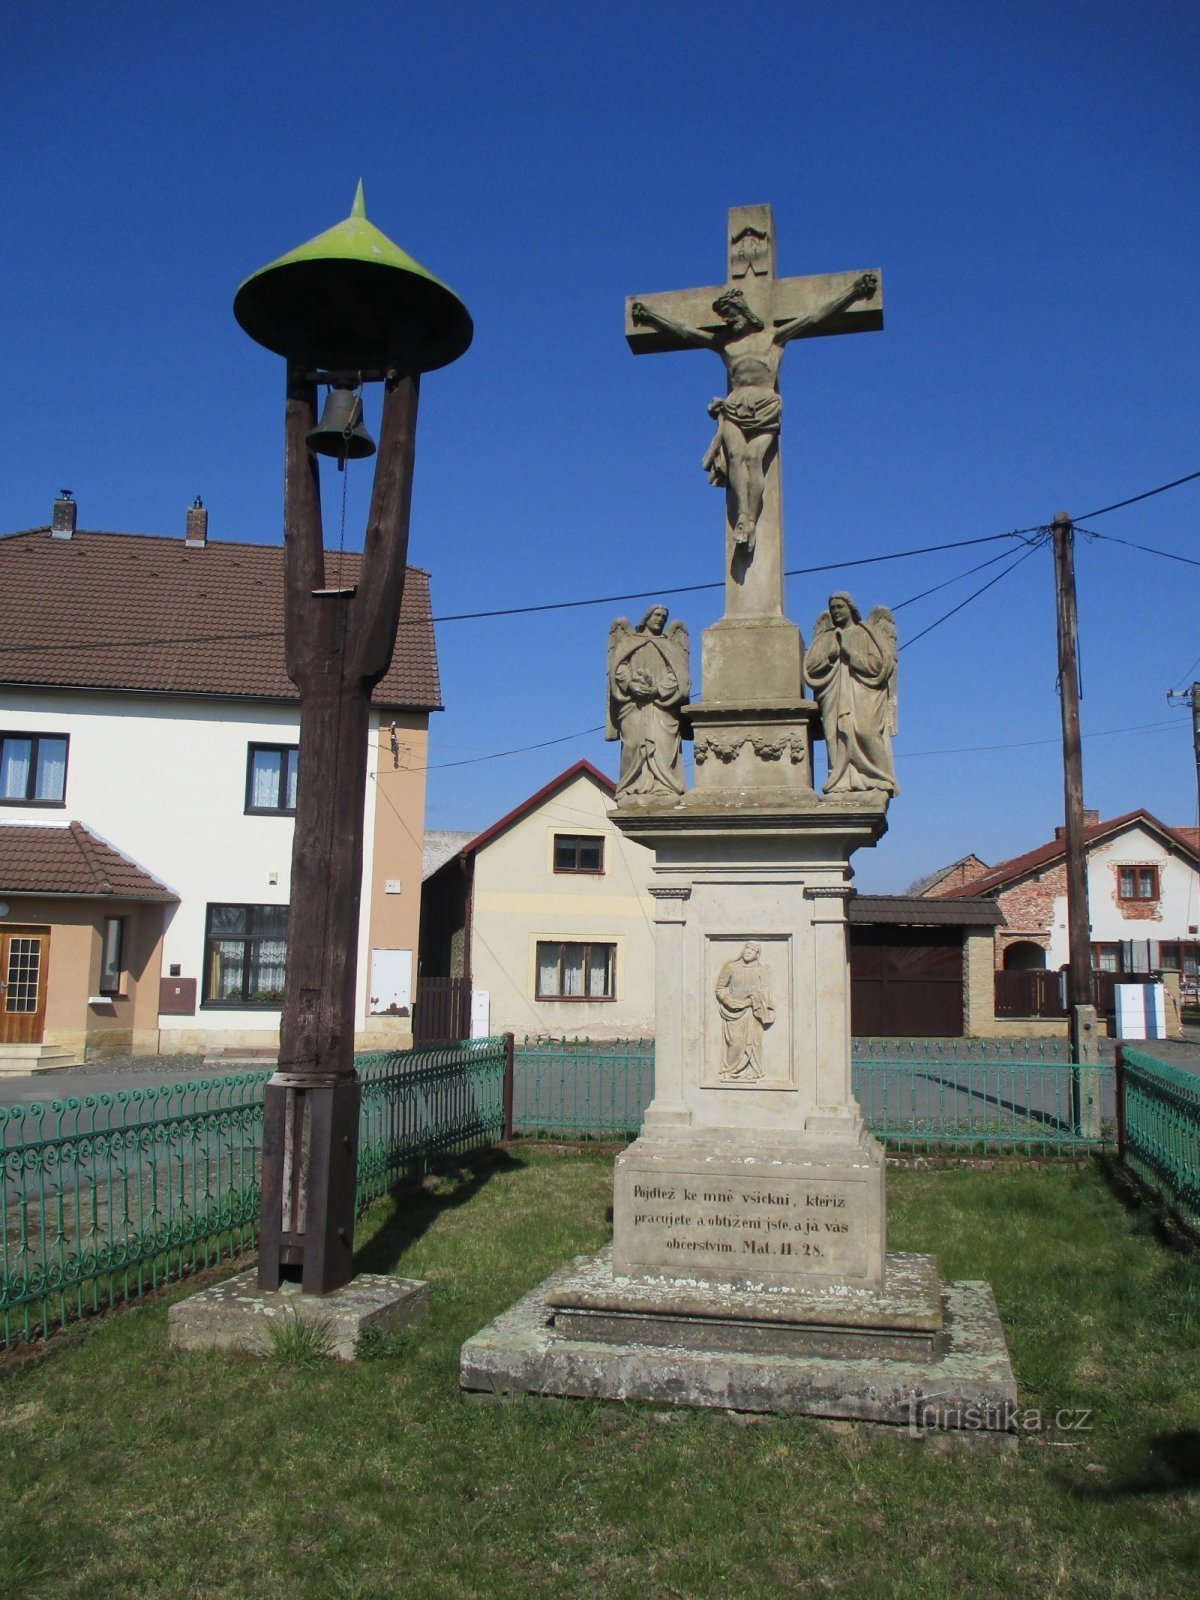 Belfort met kruis (Račice nad Trotinou, 2.4.2020 april XNUMX)